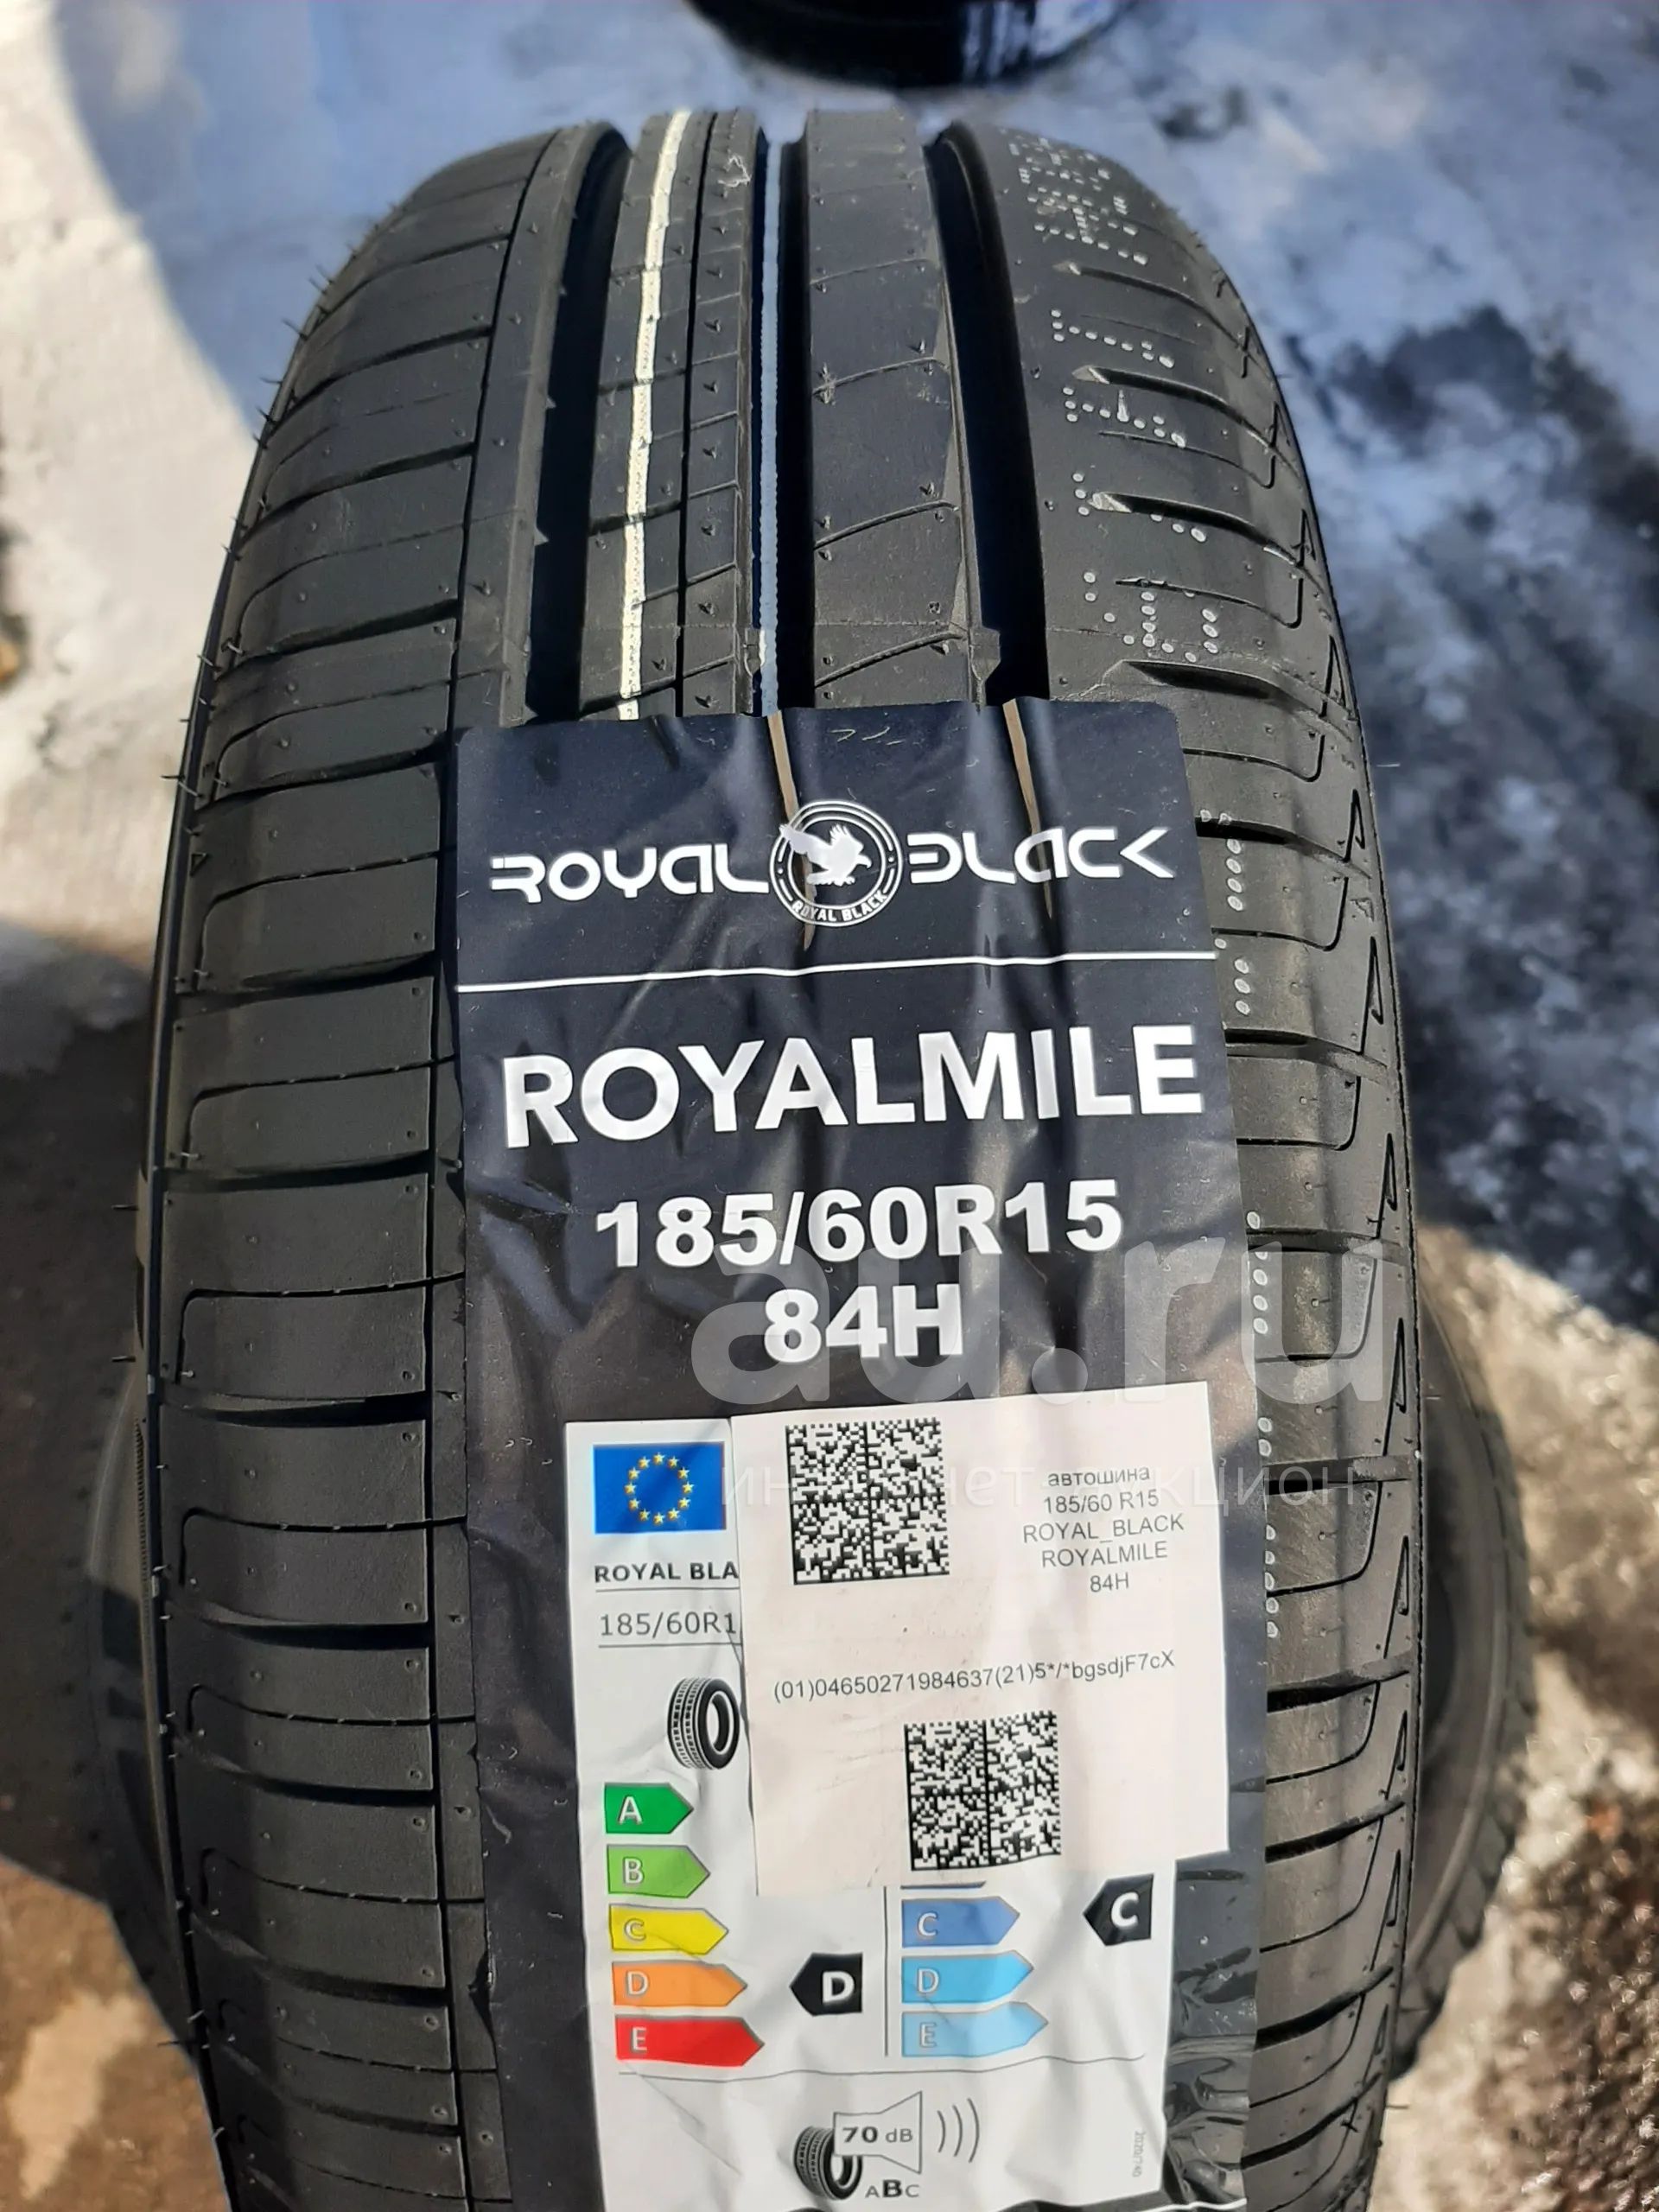 Royal шины производитель. Royal Black Royal Mile шины. Шина Royal Black royalmile 205/55 r16 91v. 185/60r14 Royal Black Royal Mile 82h. R15 195/65 Royal Black Royal Mile.